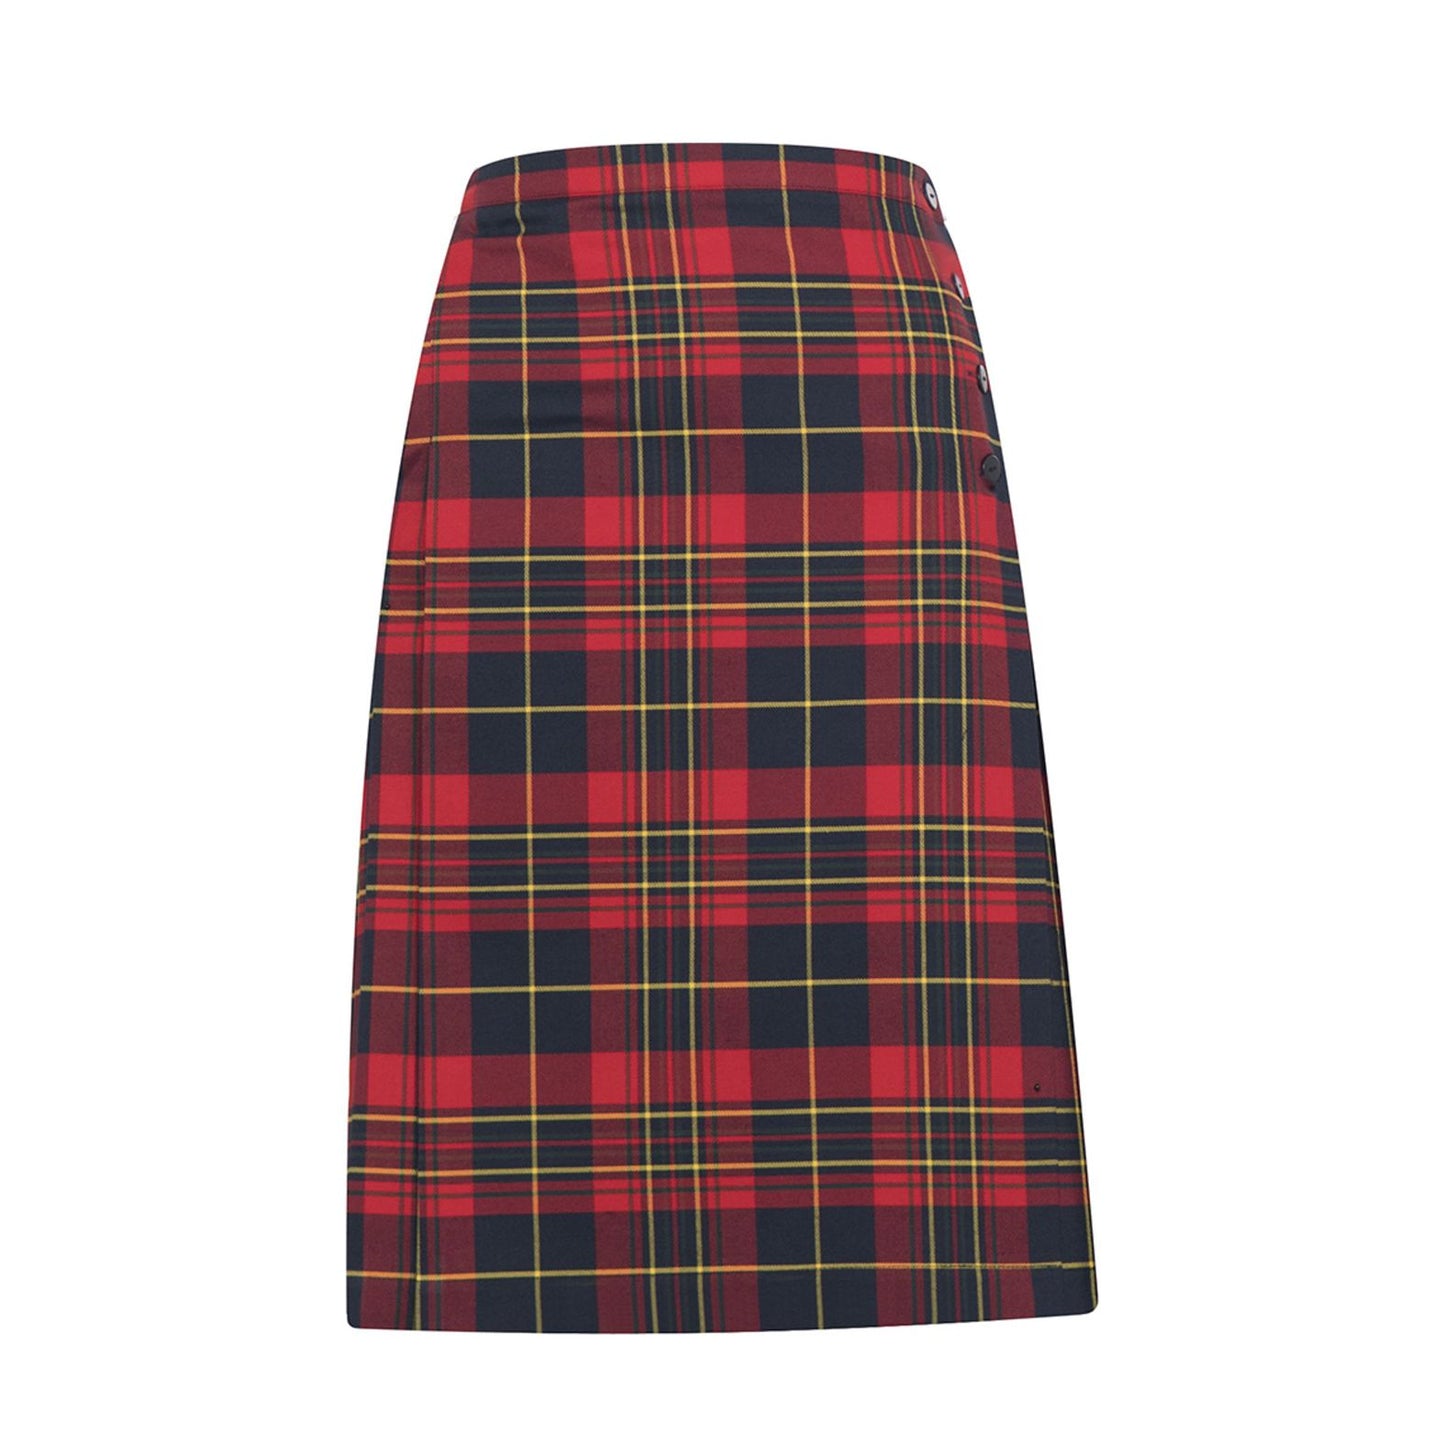 Peckover Uniform Skirt